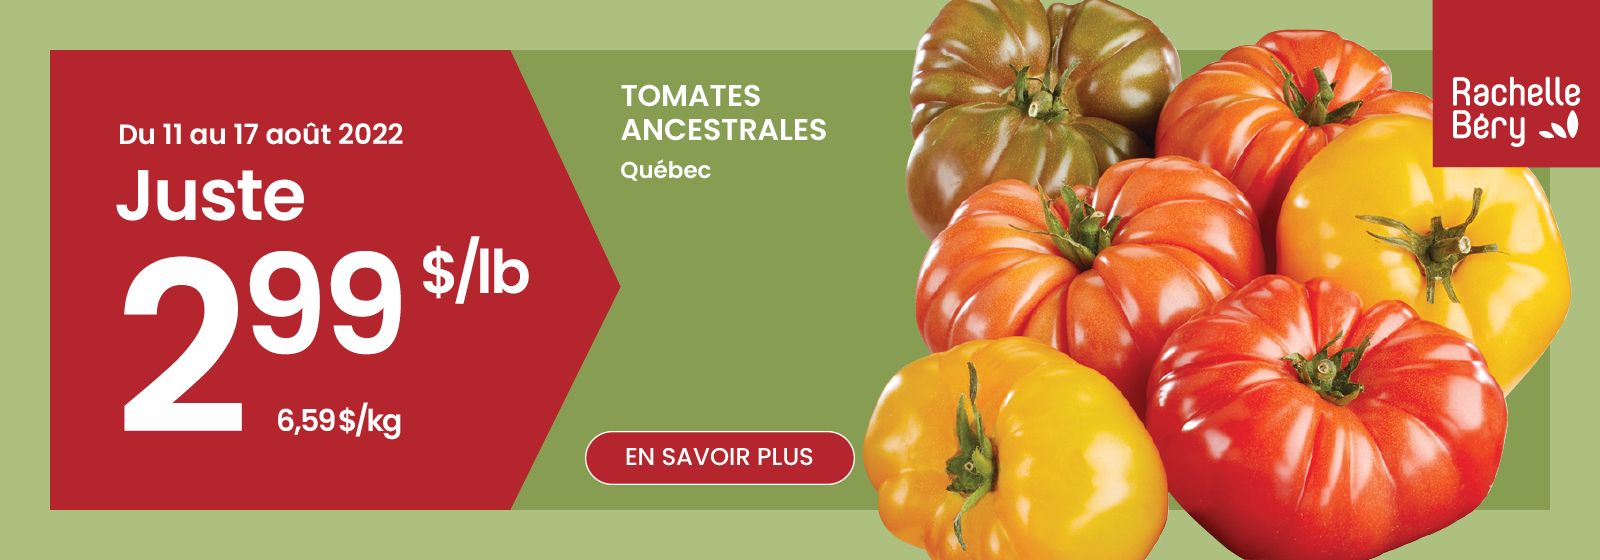 Lecture du texte 'Achetez des tomates ancestrales du Québec pour seulement 2,99 $/lb du 11 août 2022 au 17 août 2022. Cliquez sur le bouton 'En savoir plus' ici.'